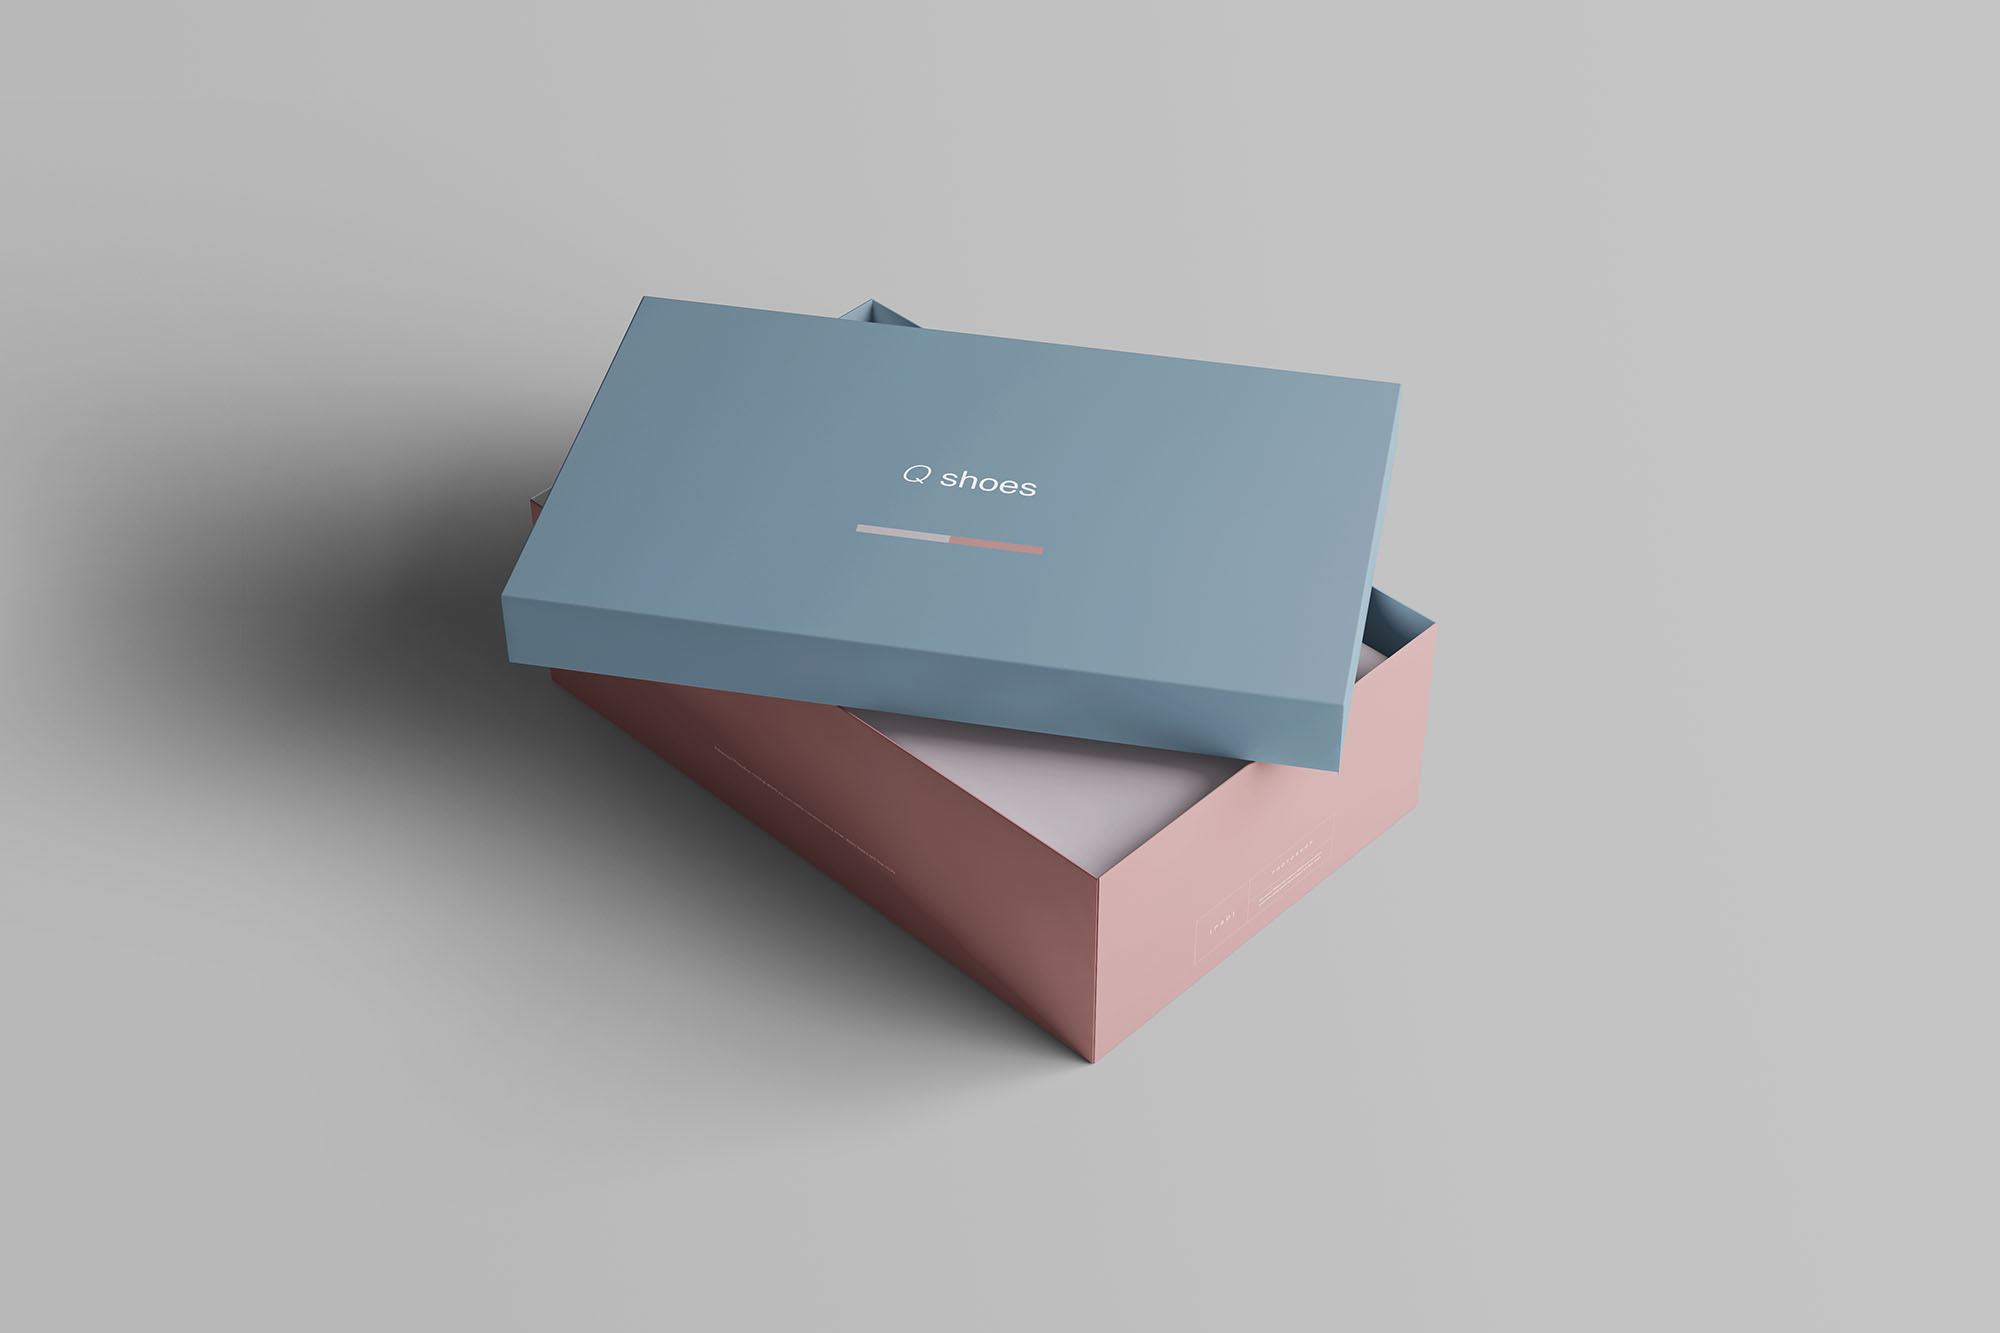 高端女鞋鞋盒外观设计图素材中国精选模板 Shoe Box Mockup插图(3)